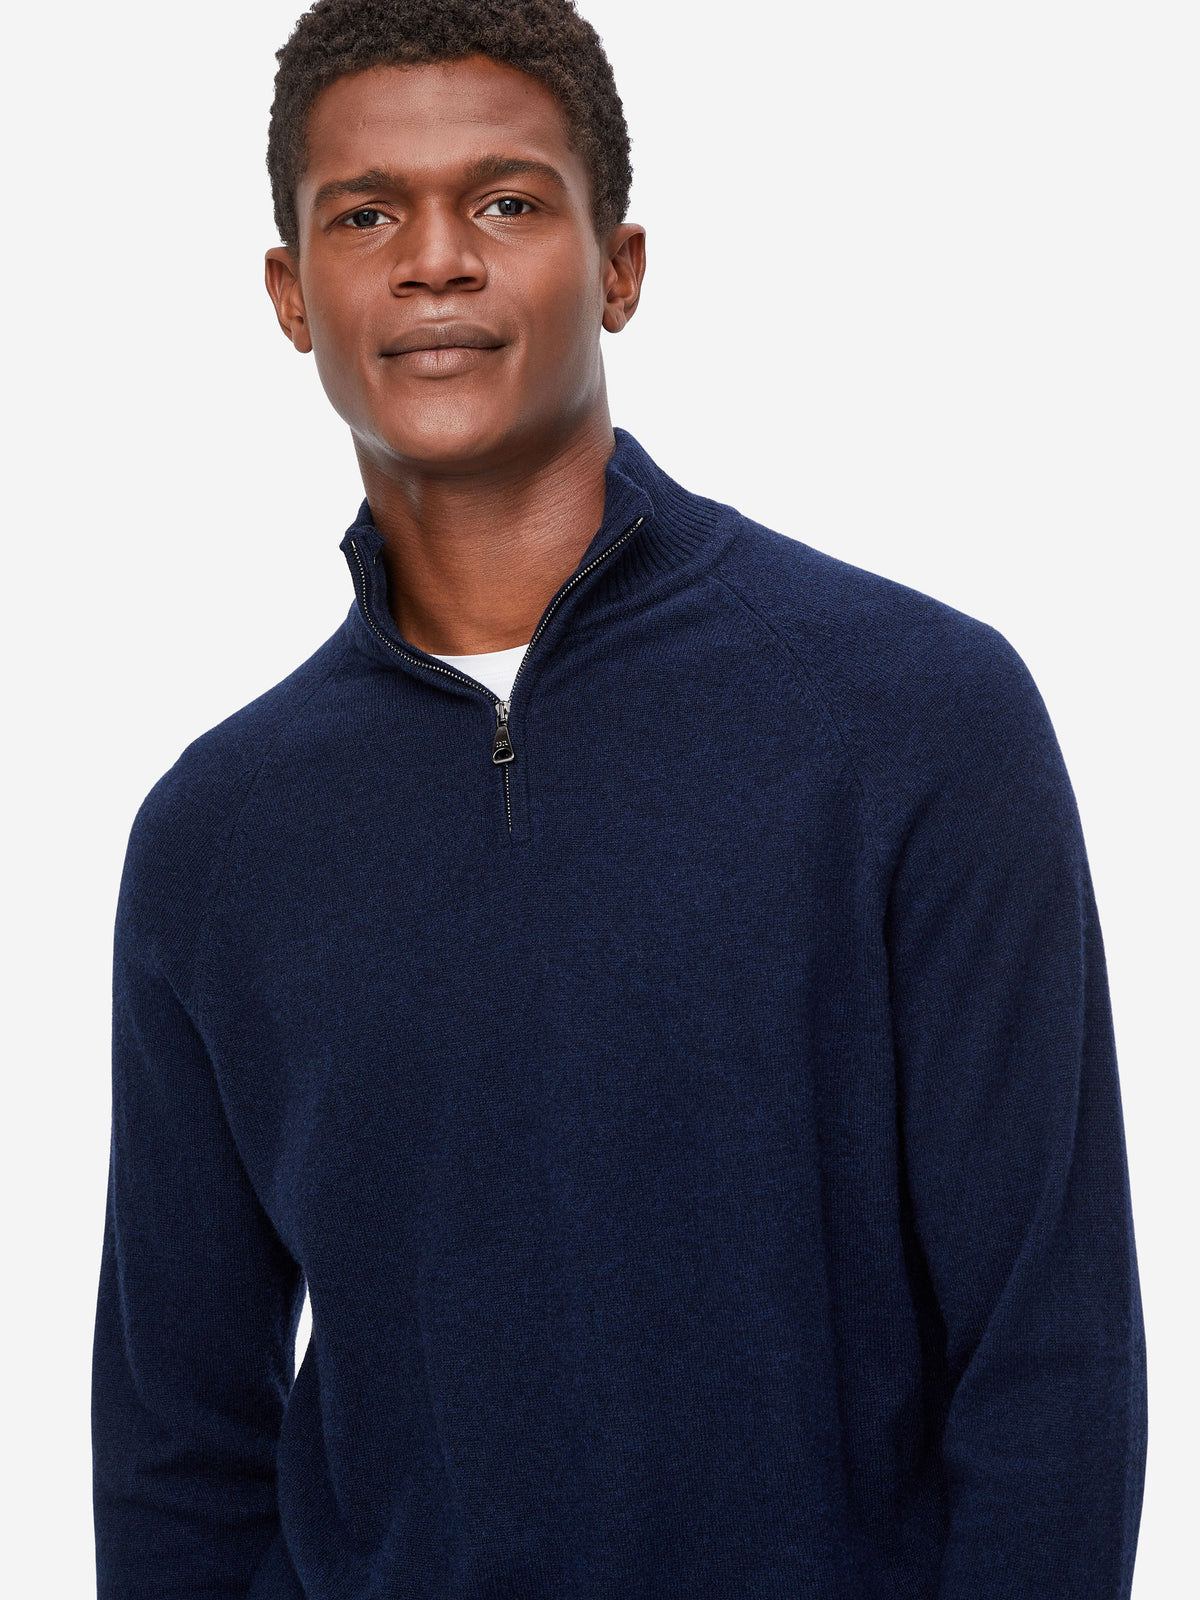 Men's Half-Zip Sweater Finley Cashmere Midnight